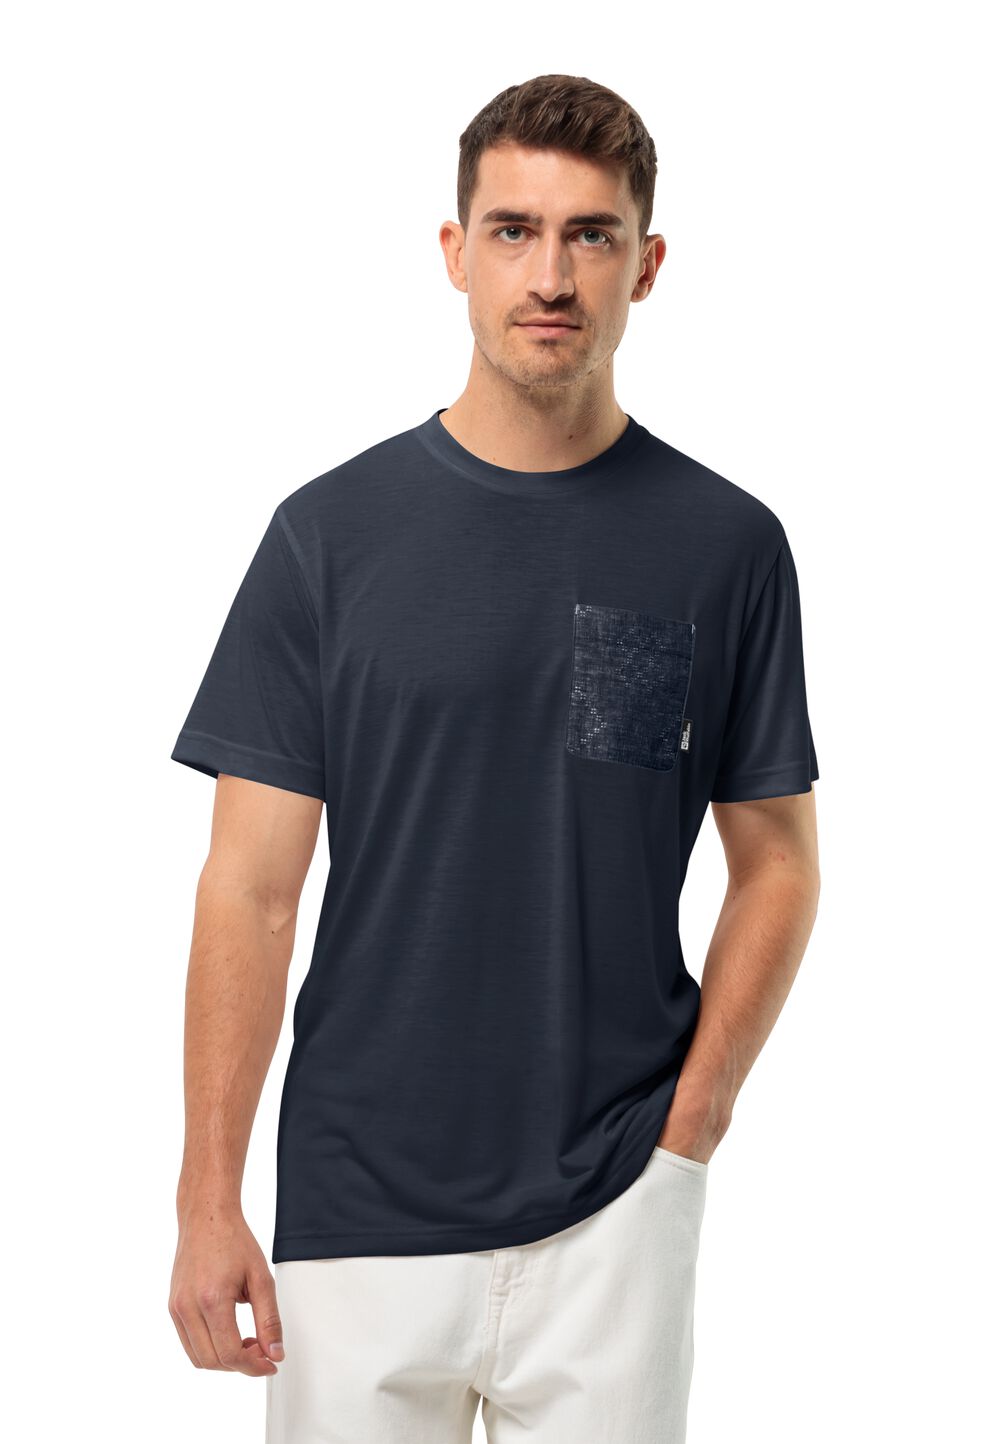 Jack Wolfskin Pocket Karana T-Shirt Men Functioneel shirt Heren XXL blue night blue